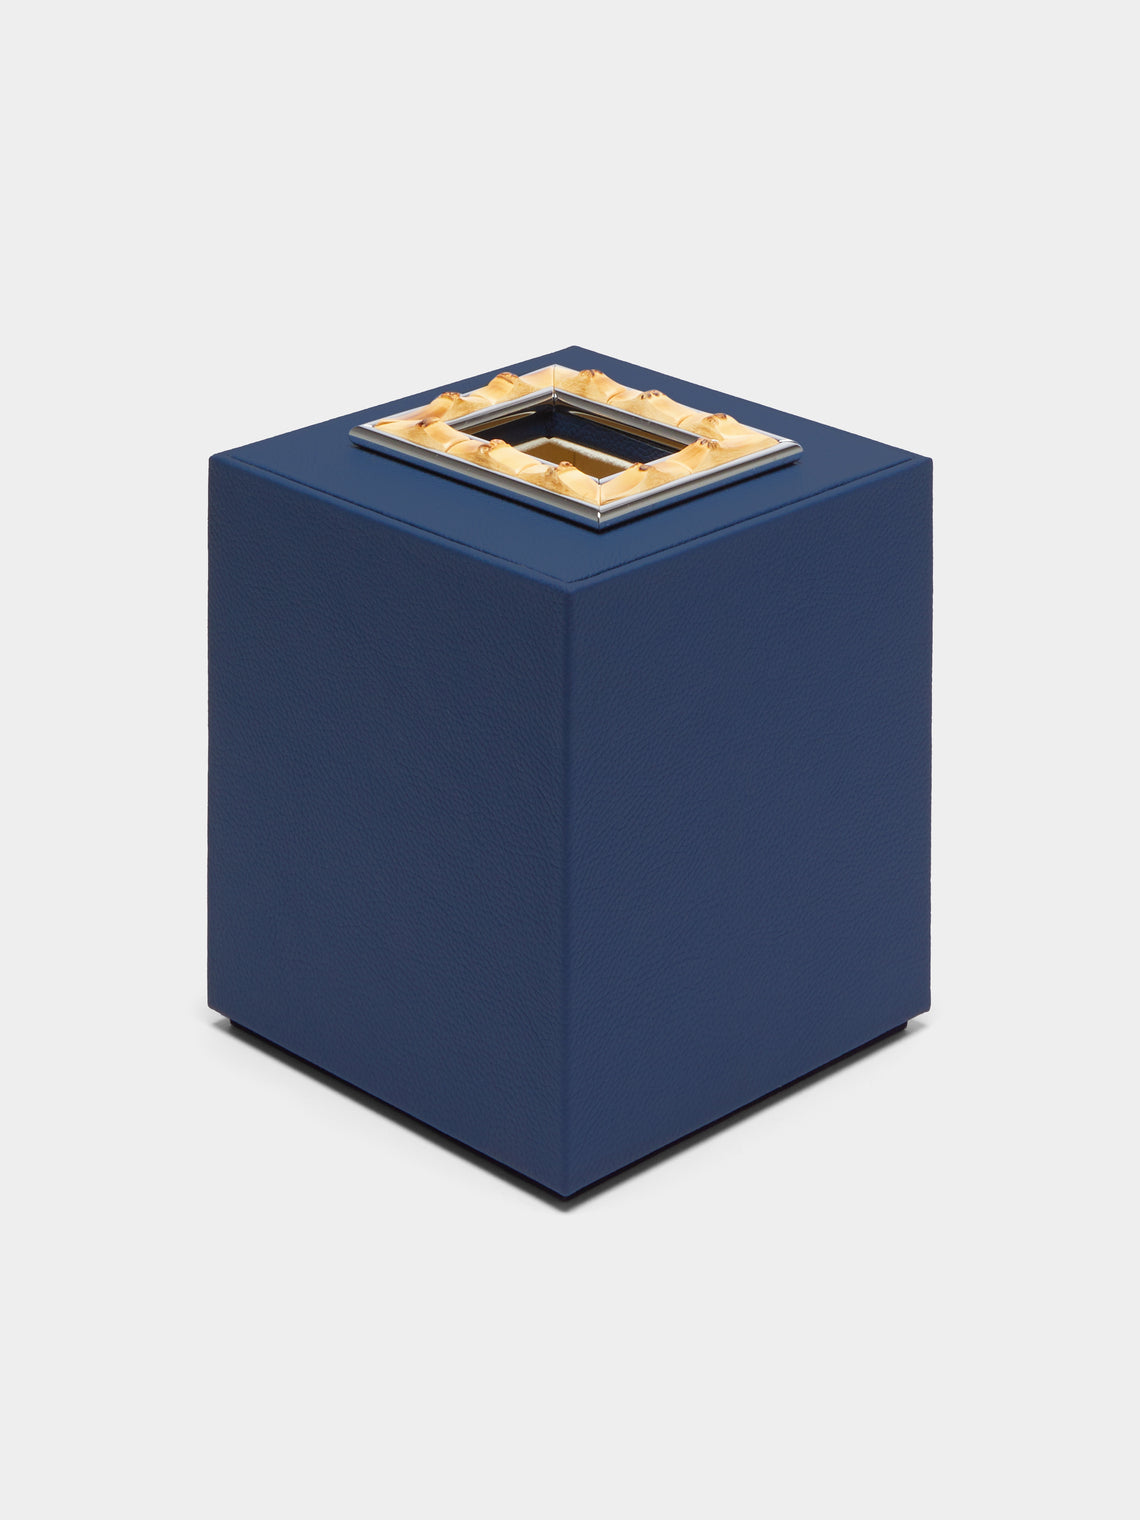 Lorenzi Milano - Leather and Bamboo Tissue Box - Blue - ABASK